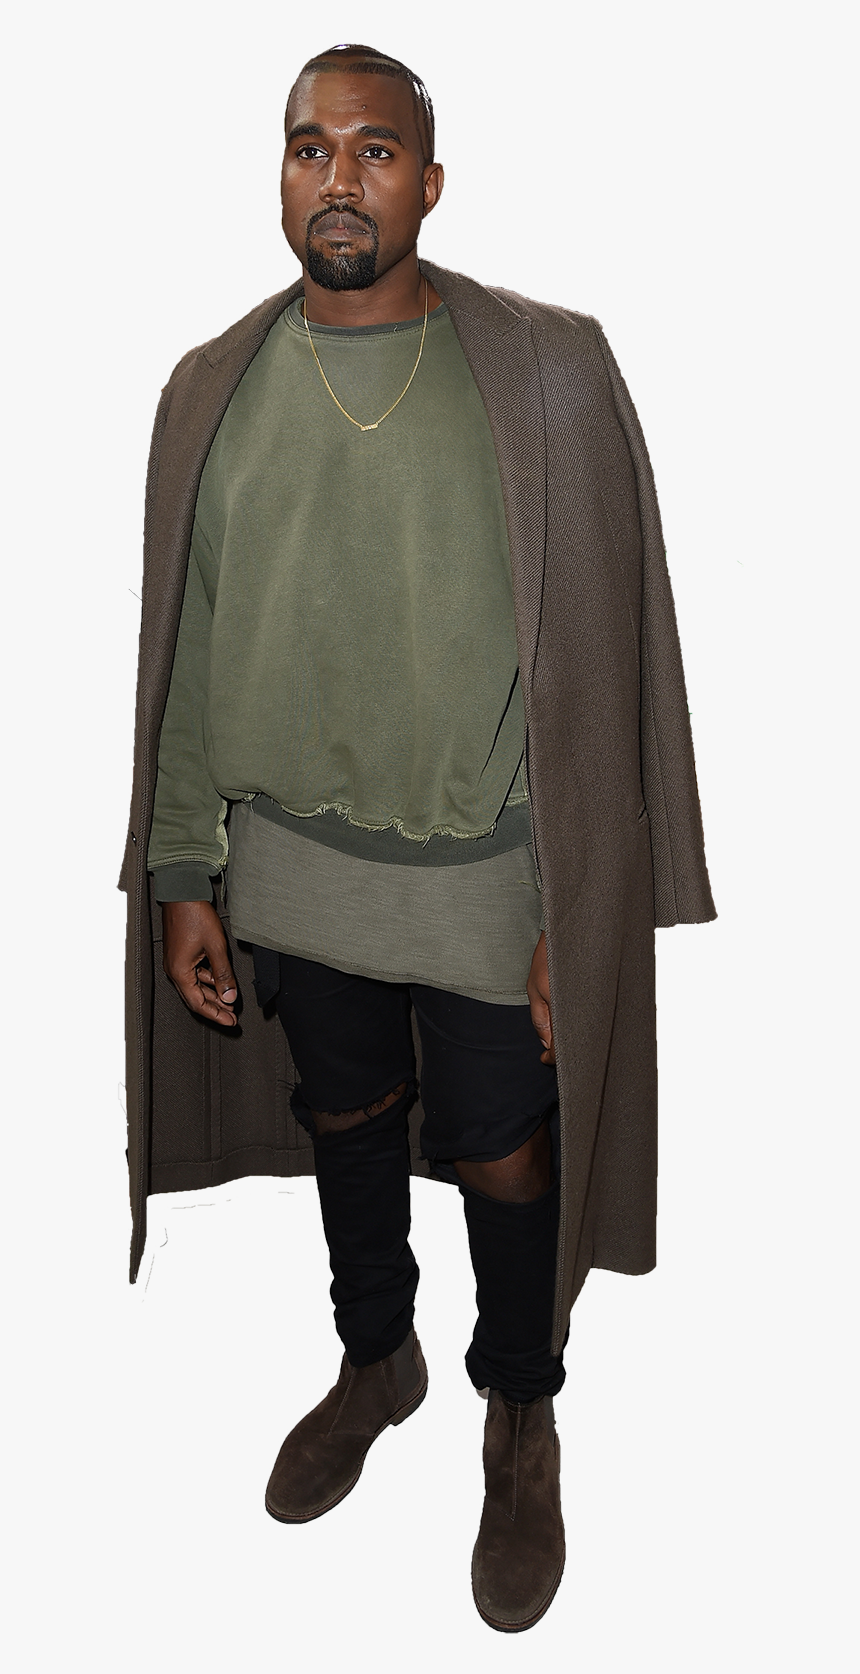 Kanye Png - Kanye West Transparent, Png Download, Free Download